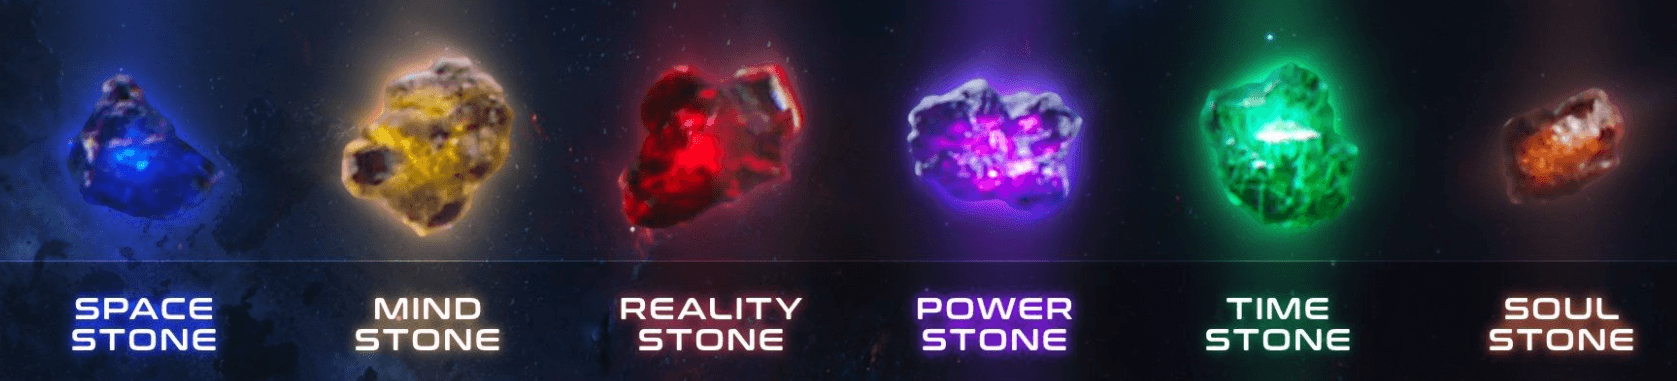 Space stone. Цвета камни бесконечности ТАНОСА. 6 Камней бесконечности Марвел. Камни бесконечности Марвел цвета. Камни бесконечности (кинематографическая Вселенная Marvel).